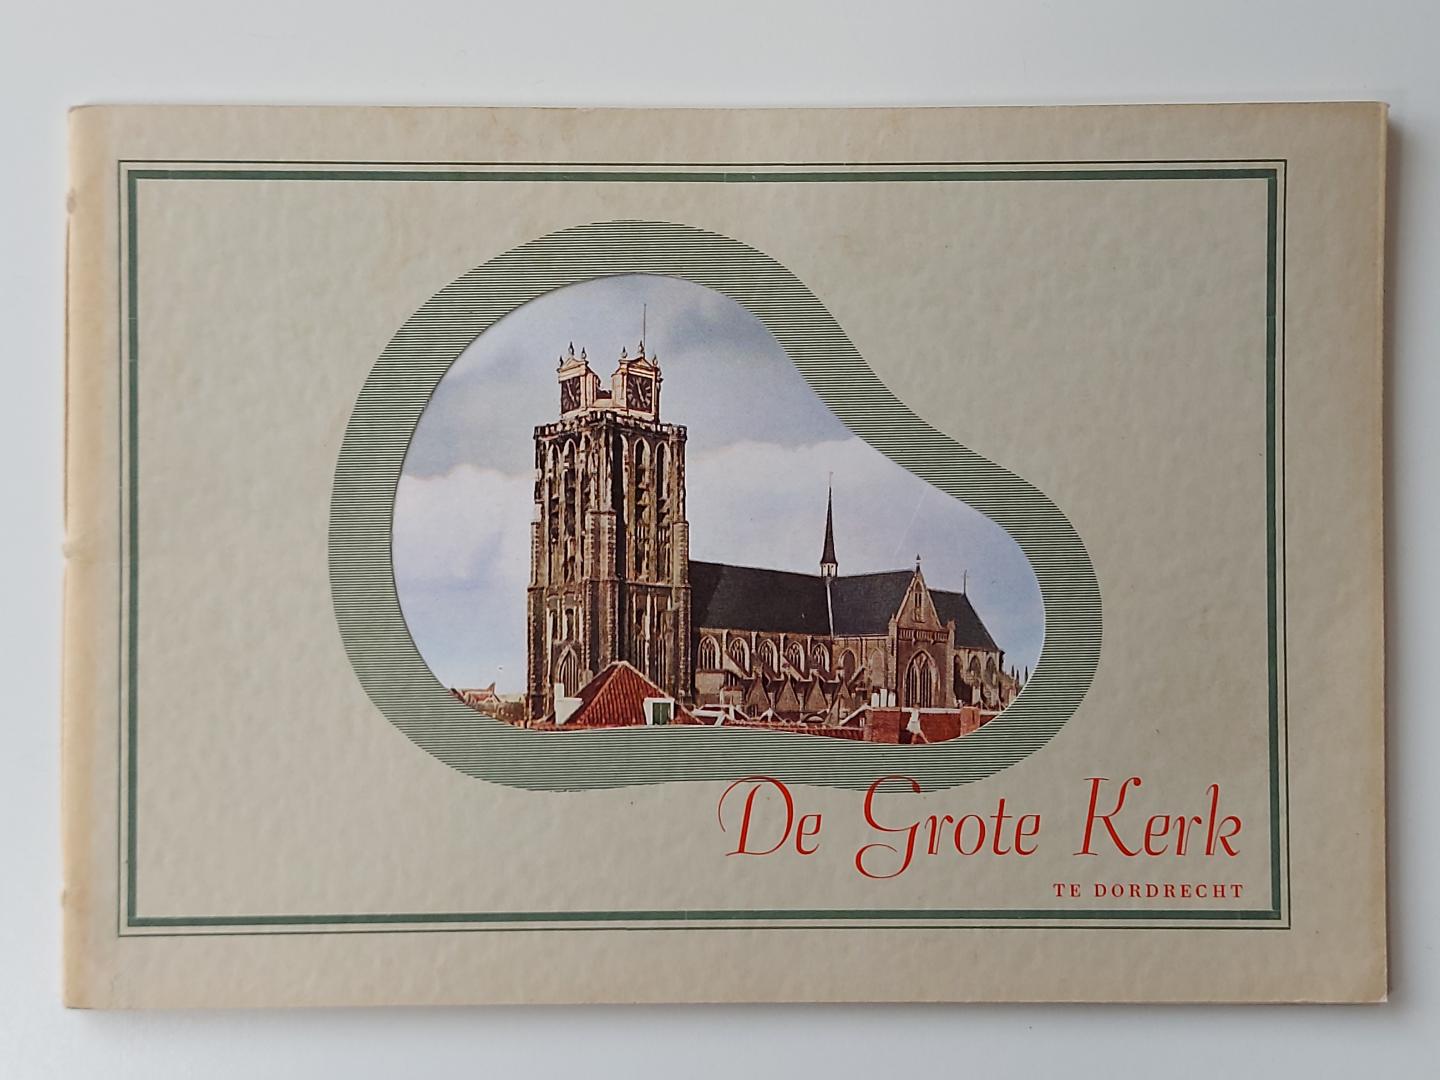 Lips, C.J.P. - De Grote Kerk te Dordrecht